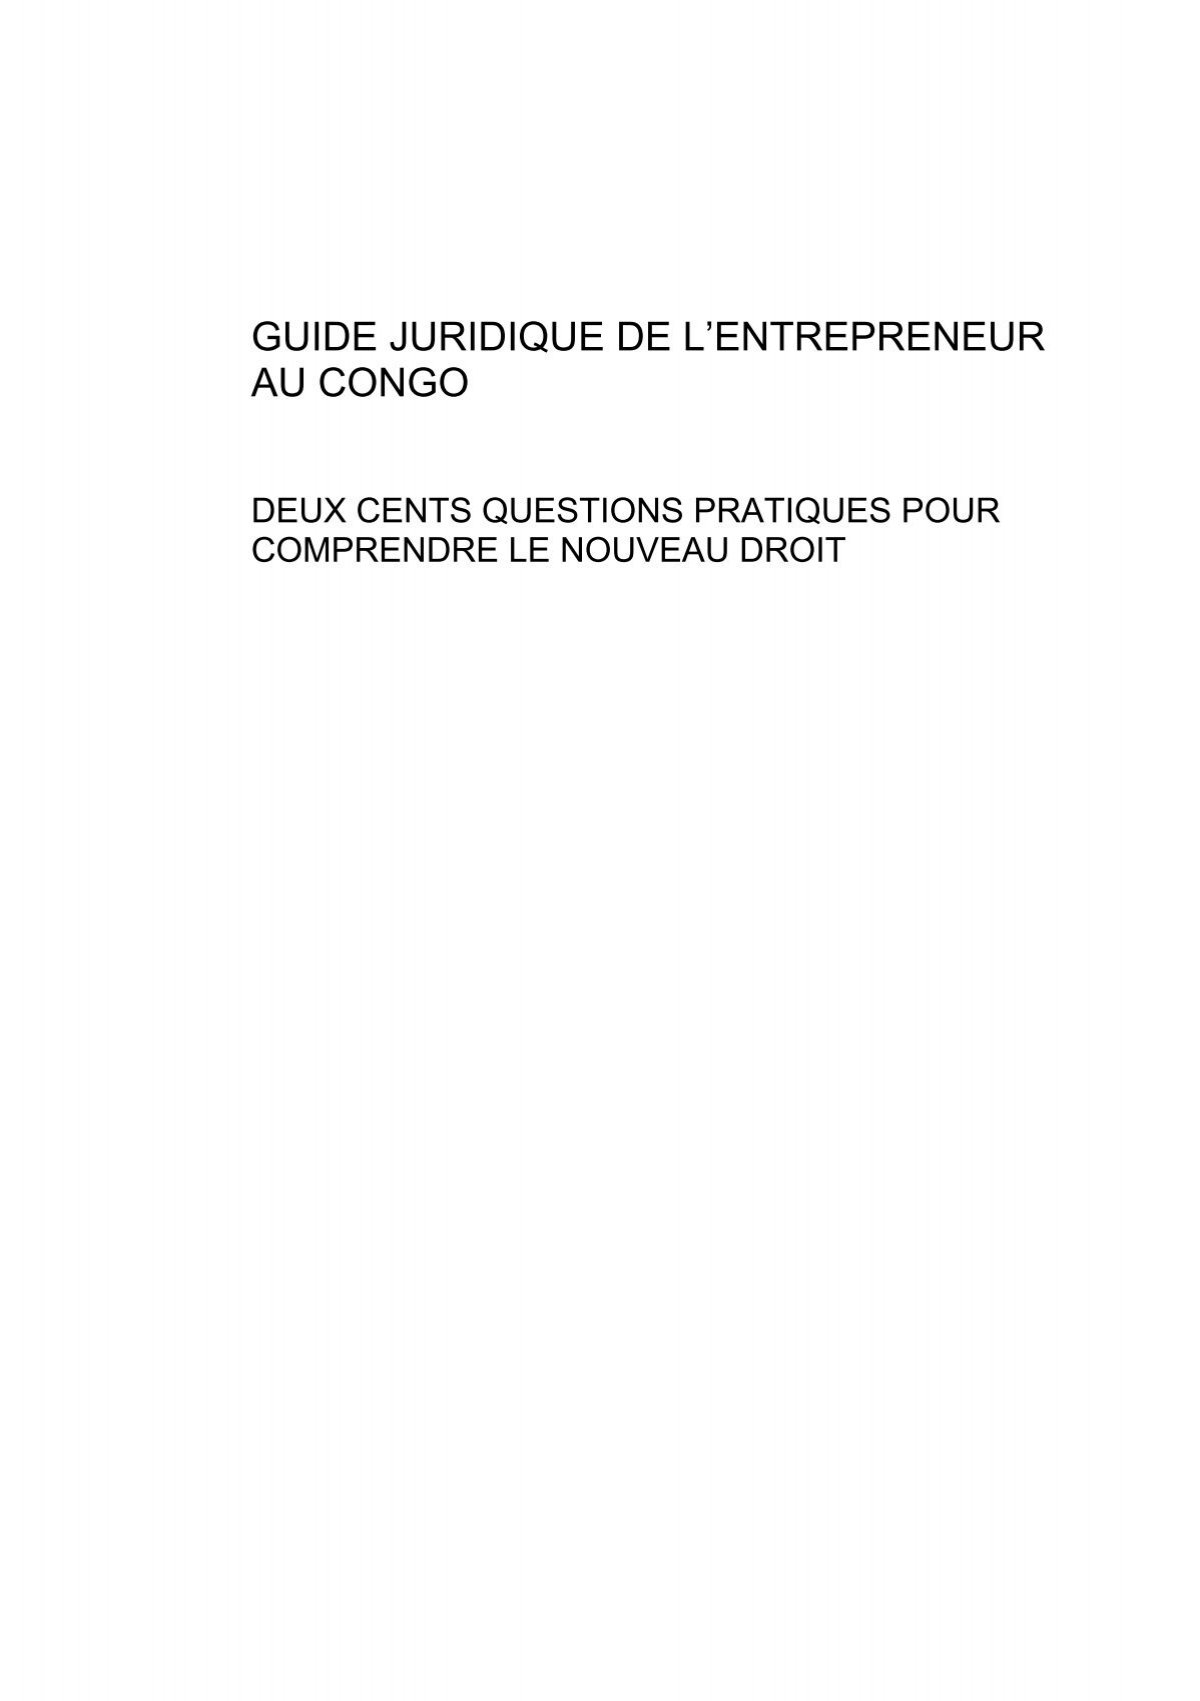 Le bail commercial en droit ohada pdf